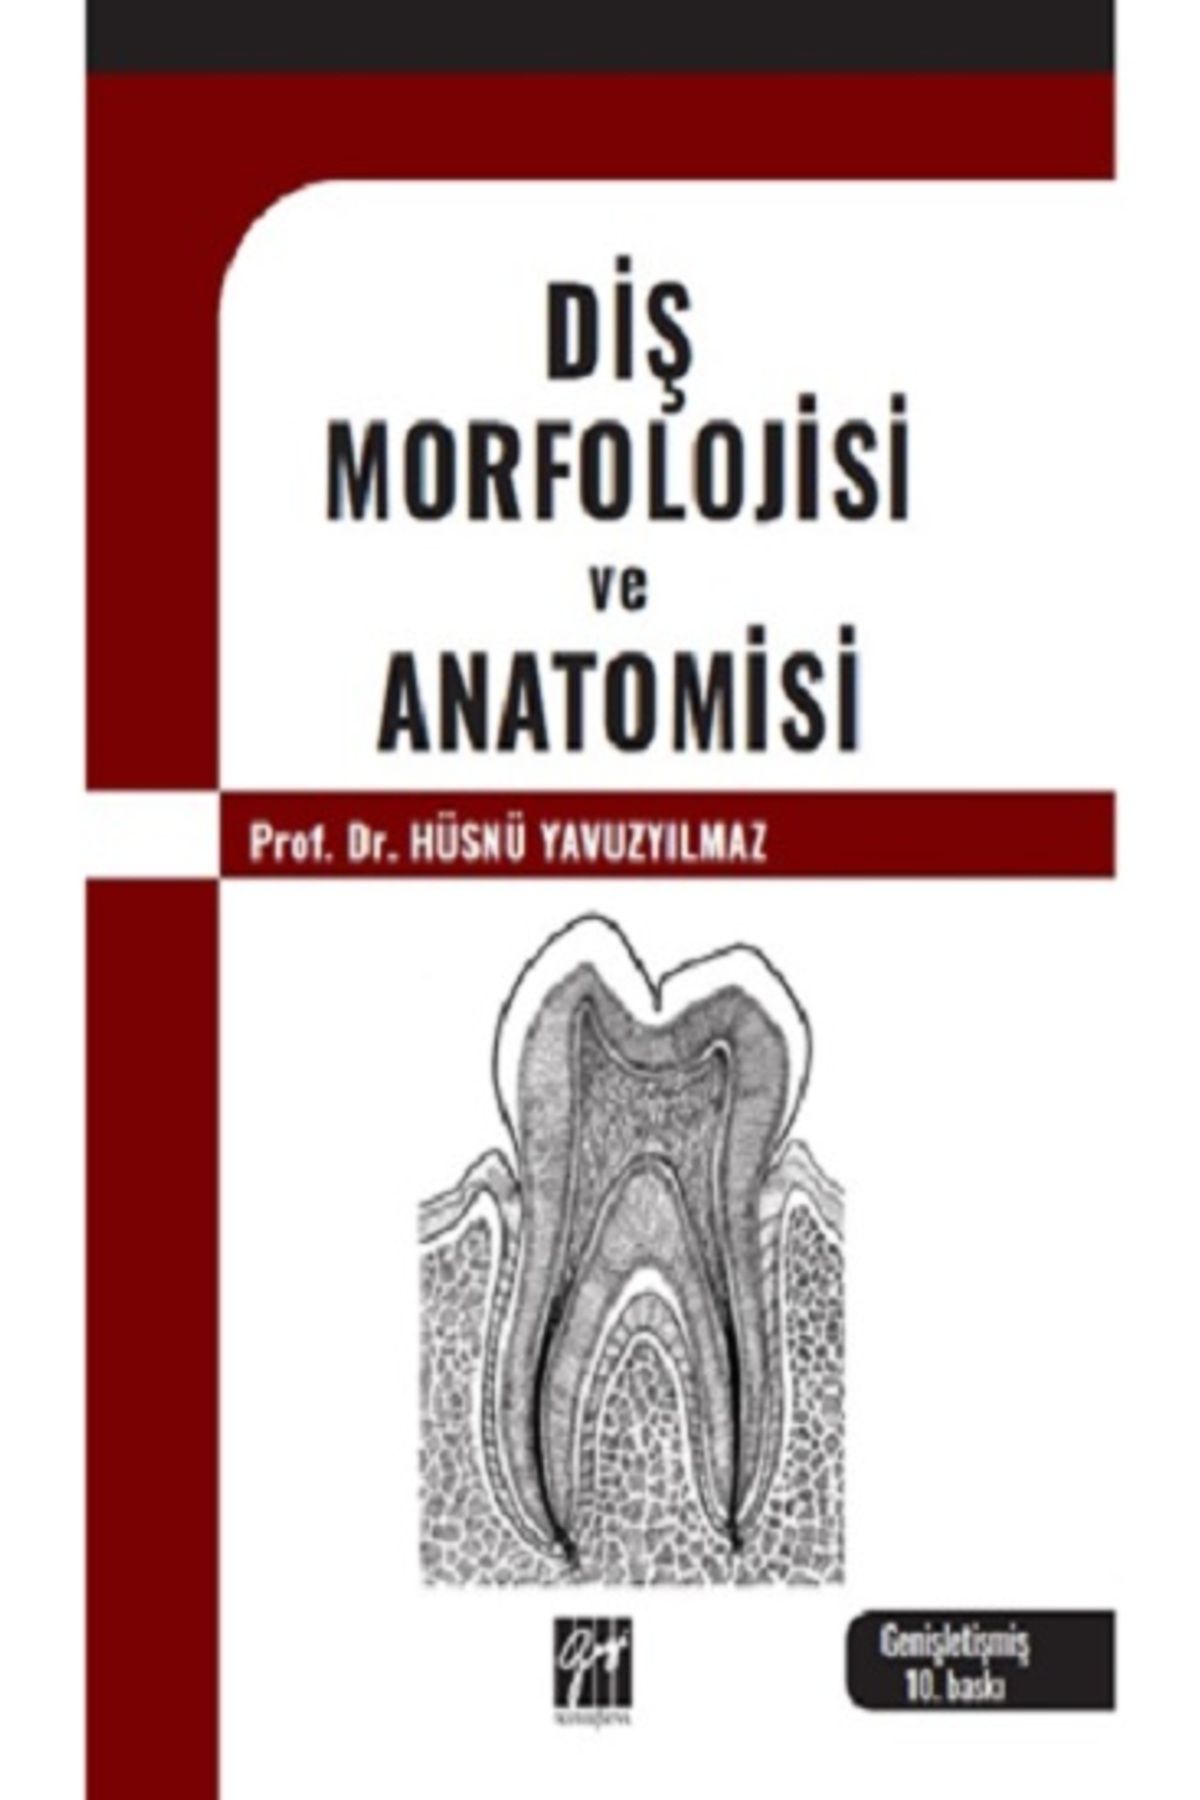 Gazi Kitabevi Diş Morfolojisi Ve Anatomisi kitabı - Hüsnü Yavuzyılmaz - Gazi Kitabevi